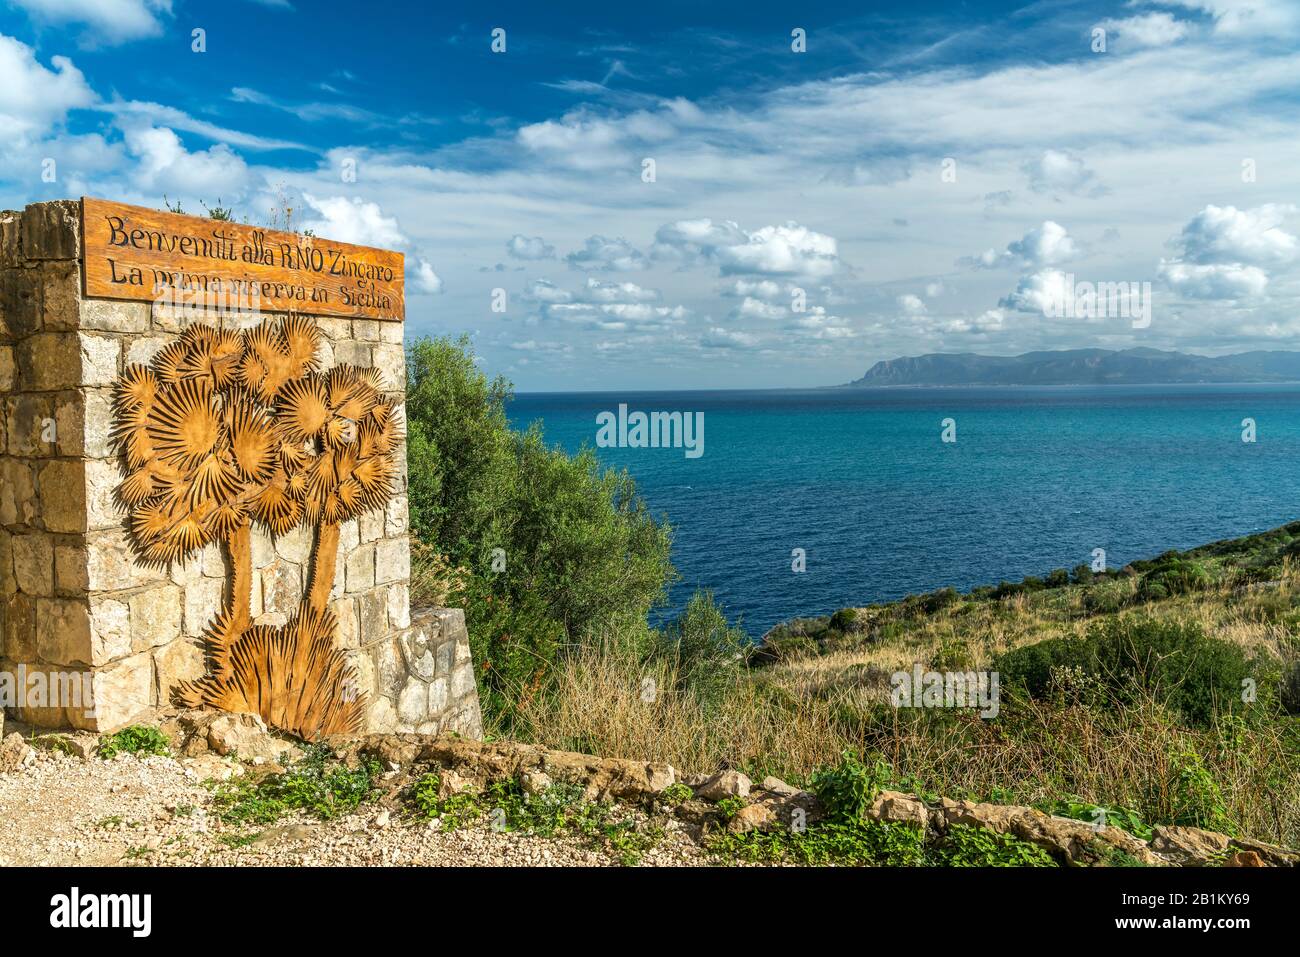 Eingang zum Naturreservat Zingaro, Sizilien, Italien, Europa  |  entrance to the Zingaro Natural Reserve, Sicily, Italy, Europe Stock Photo